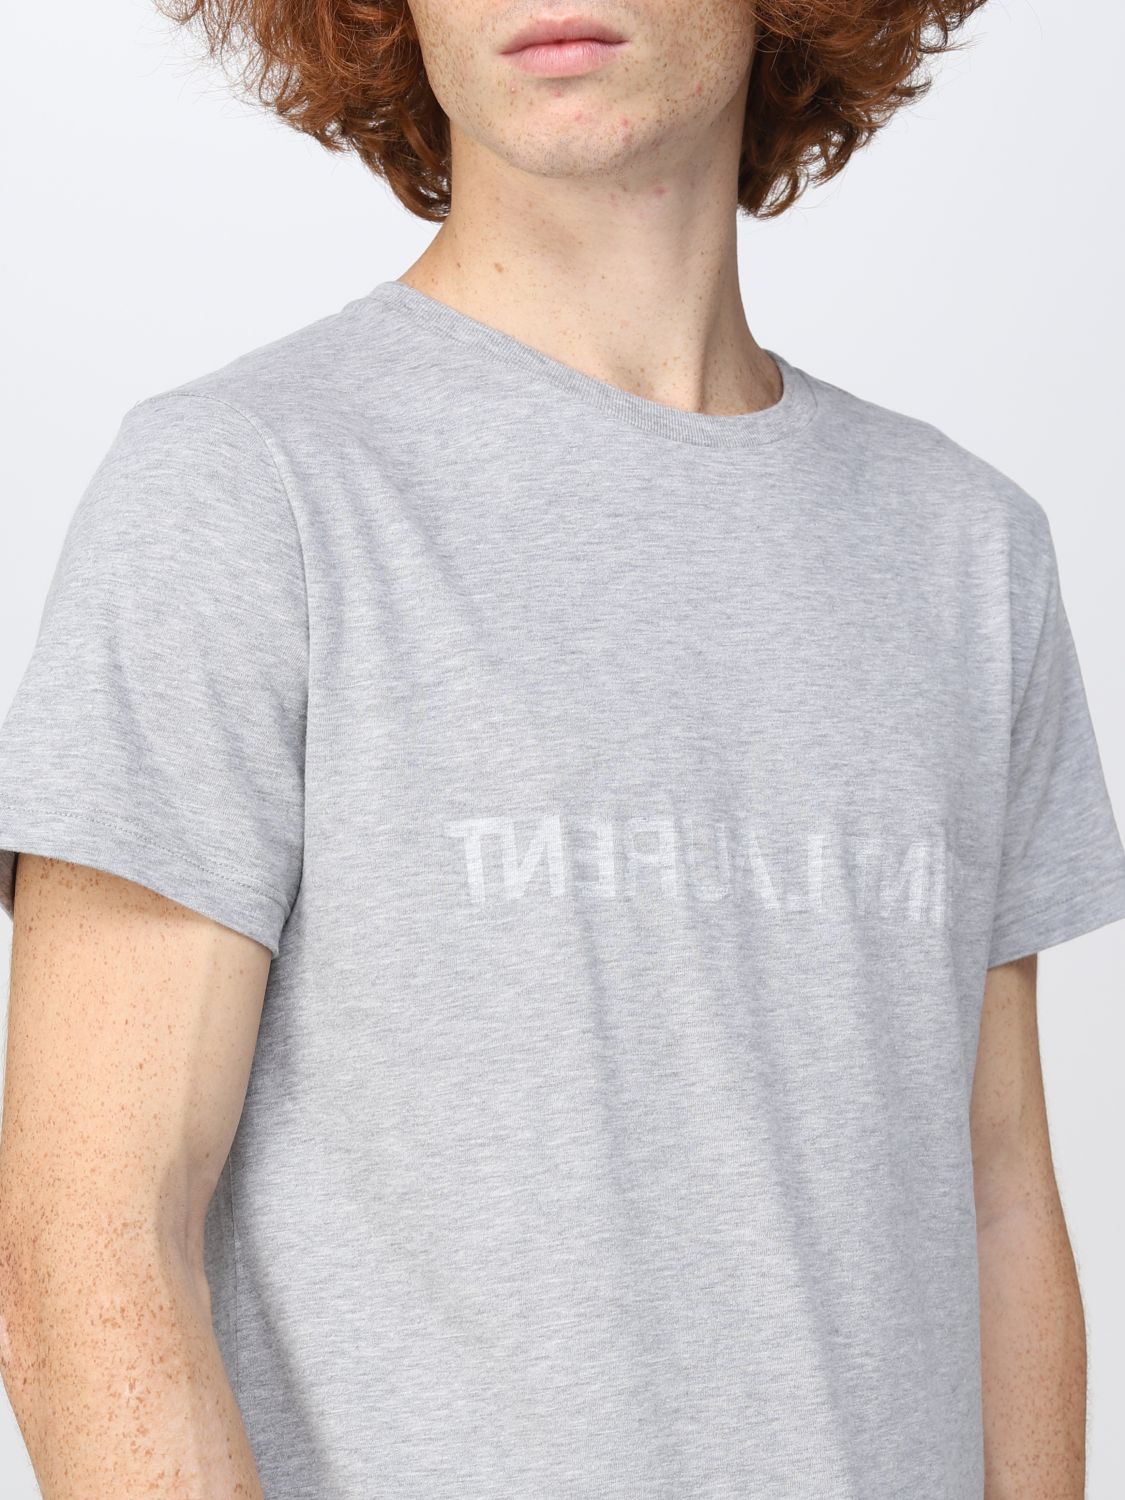 T-shirt Saint Laurent: Saint Laurent t-shirt for man grey 5